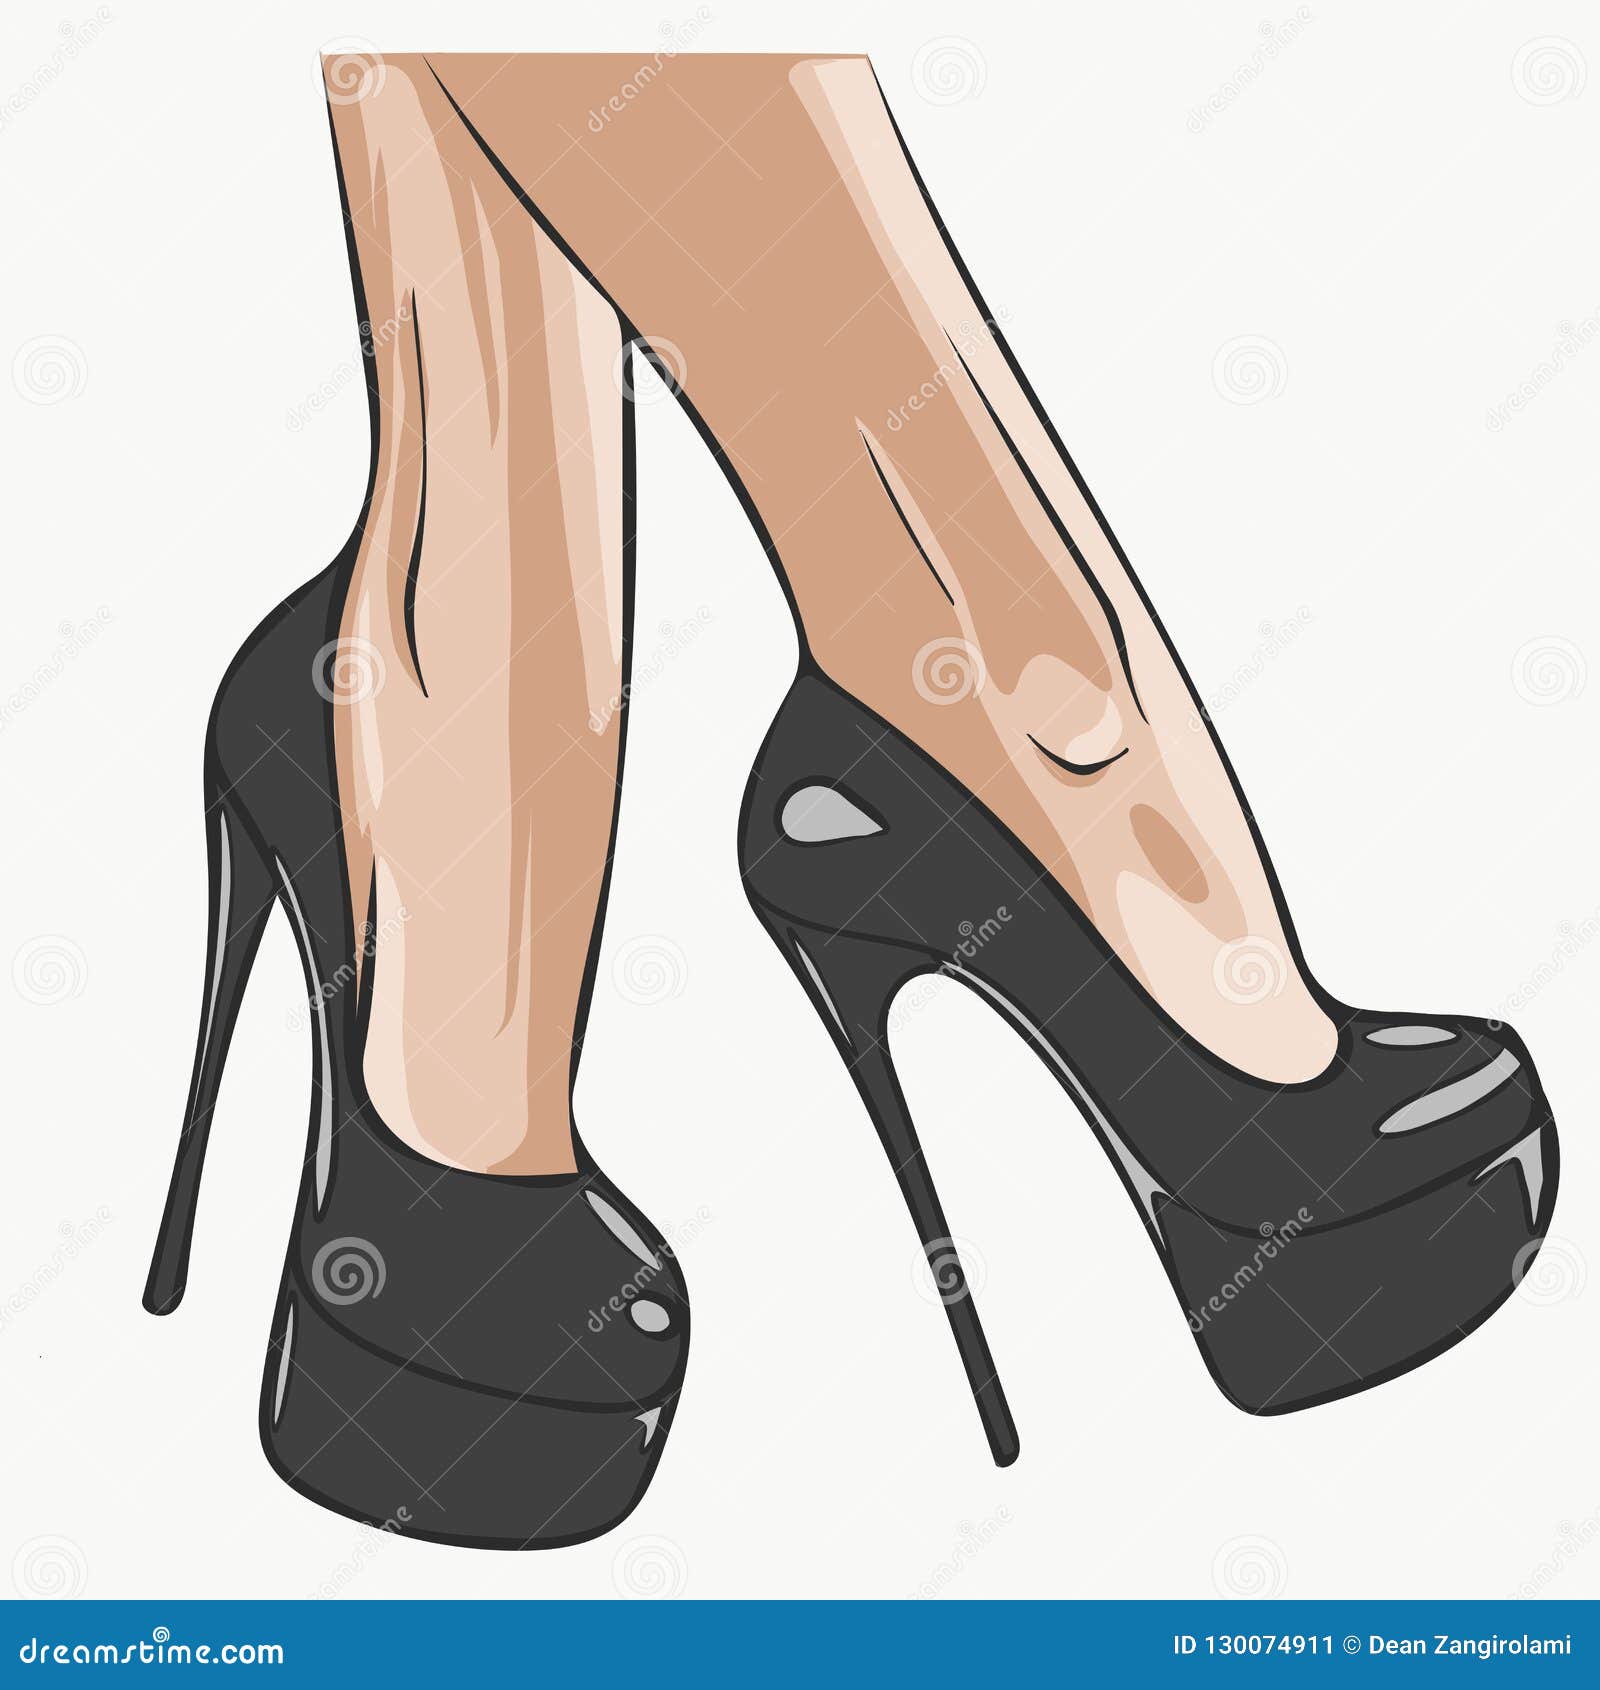 cleopatra | Heels, Sandals heels, Prom shoes